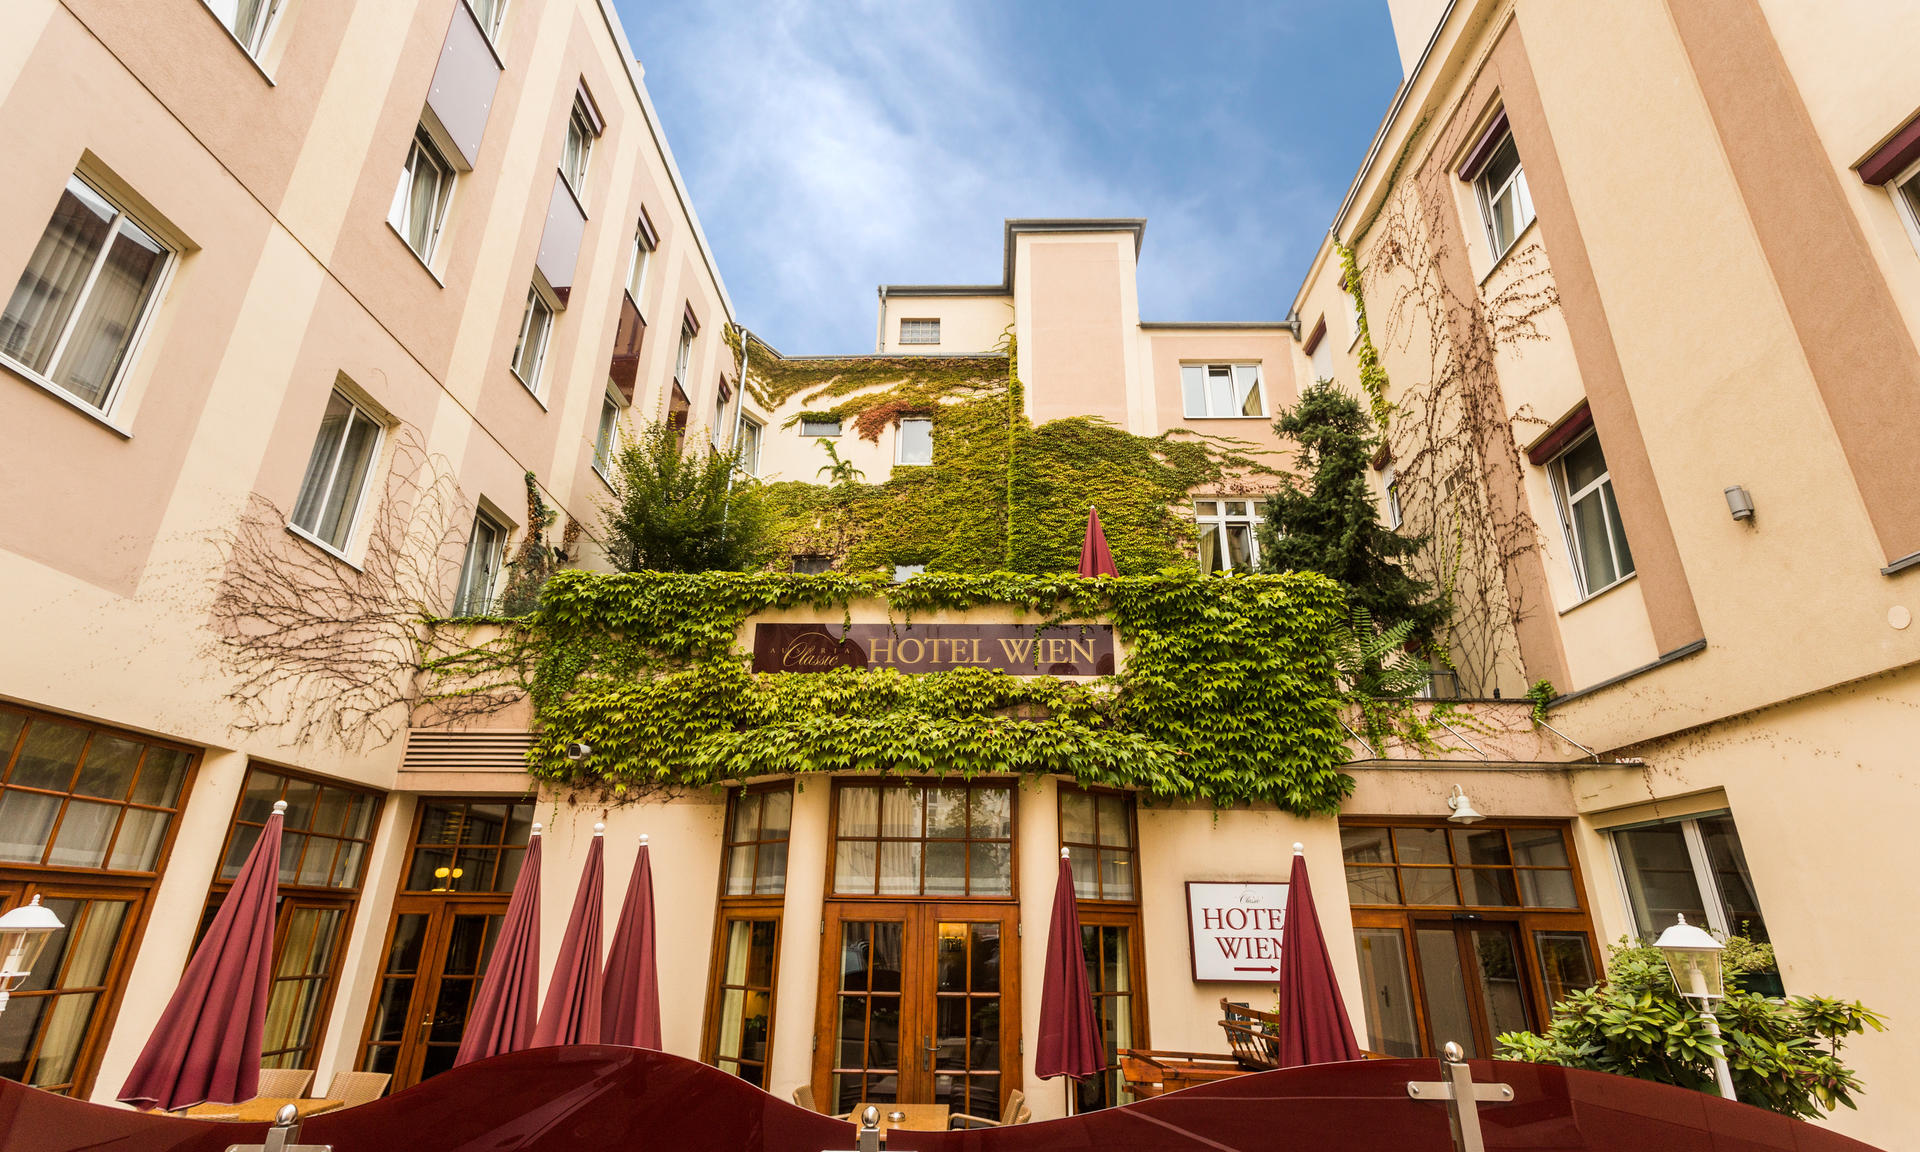 The terrace of Austria Classic Hotel Wien